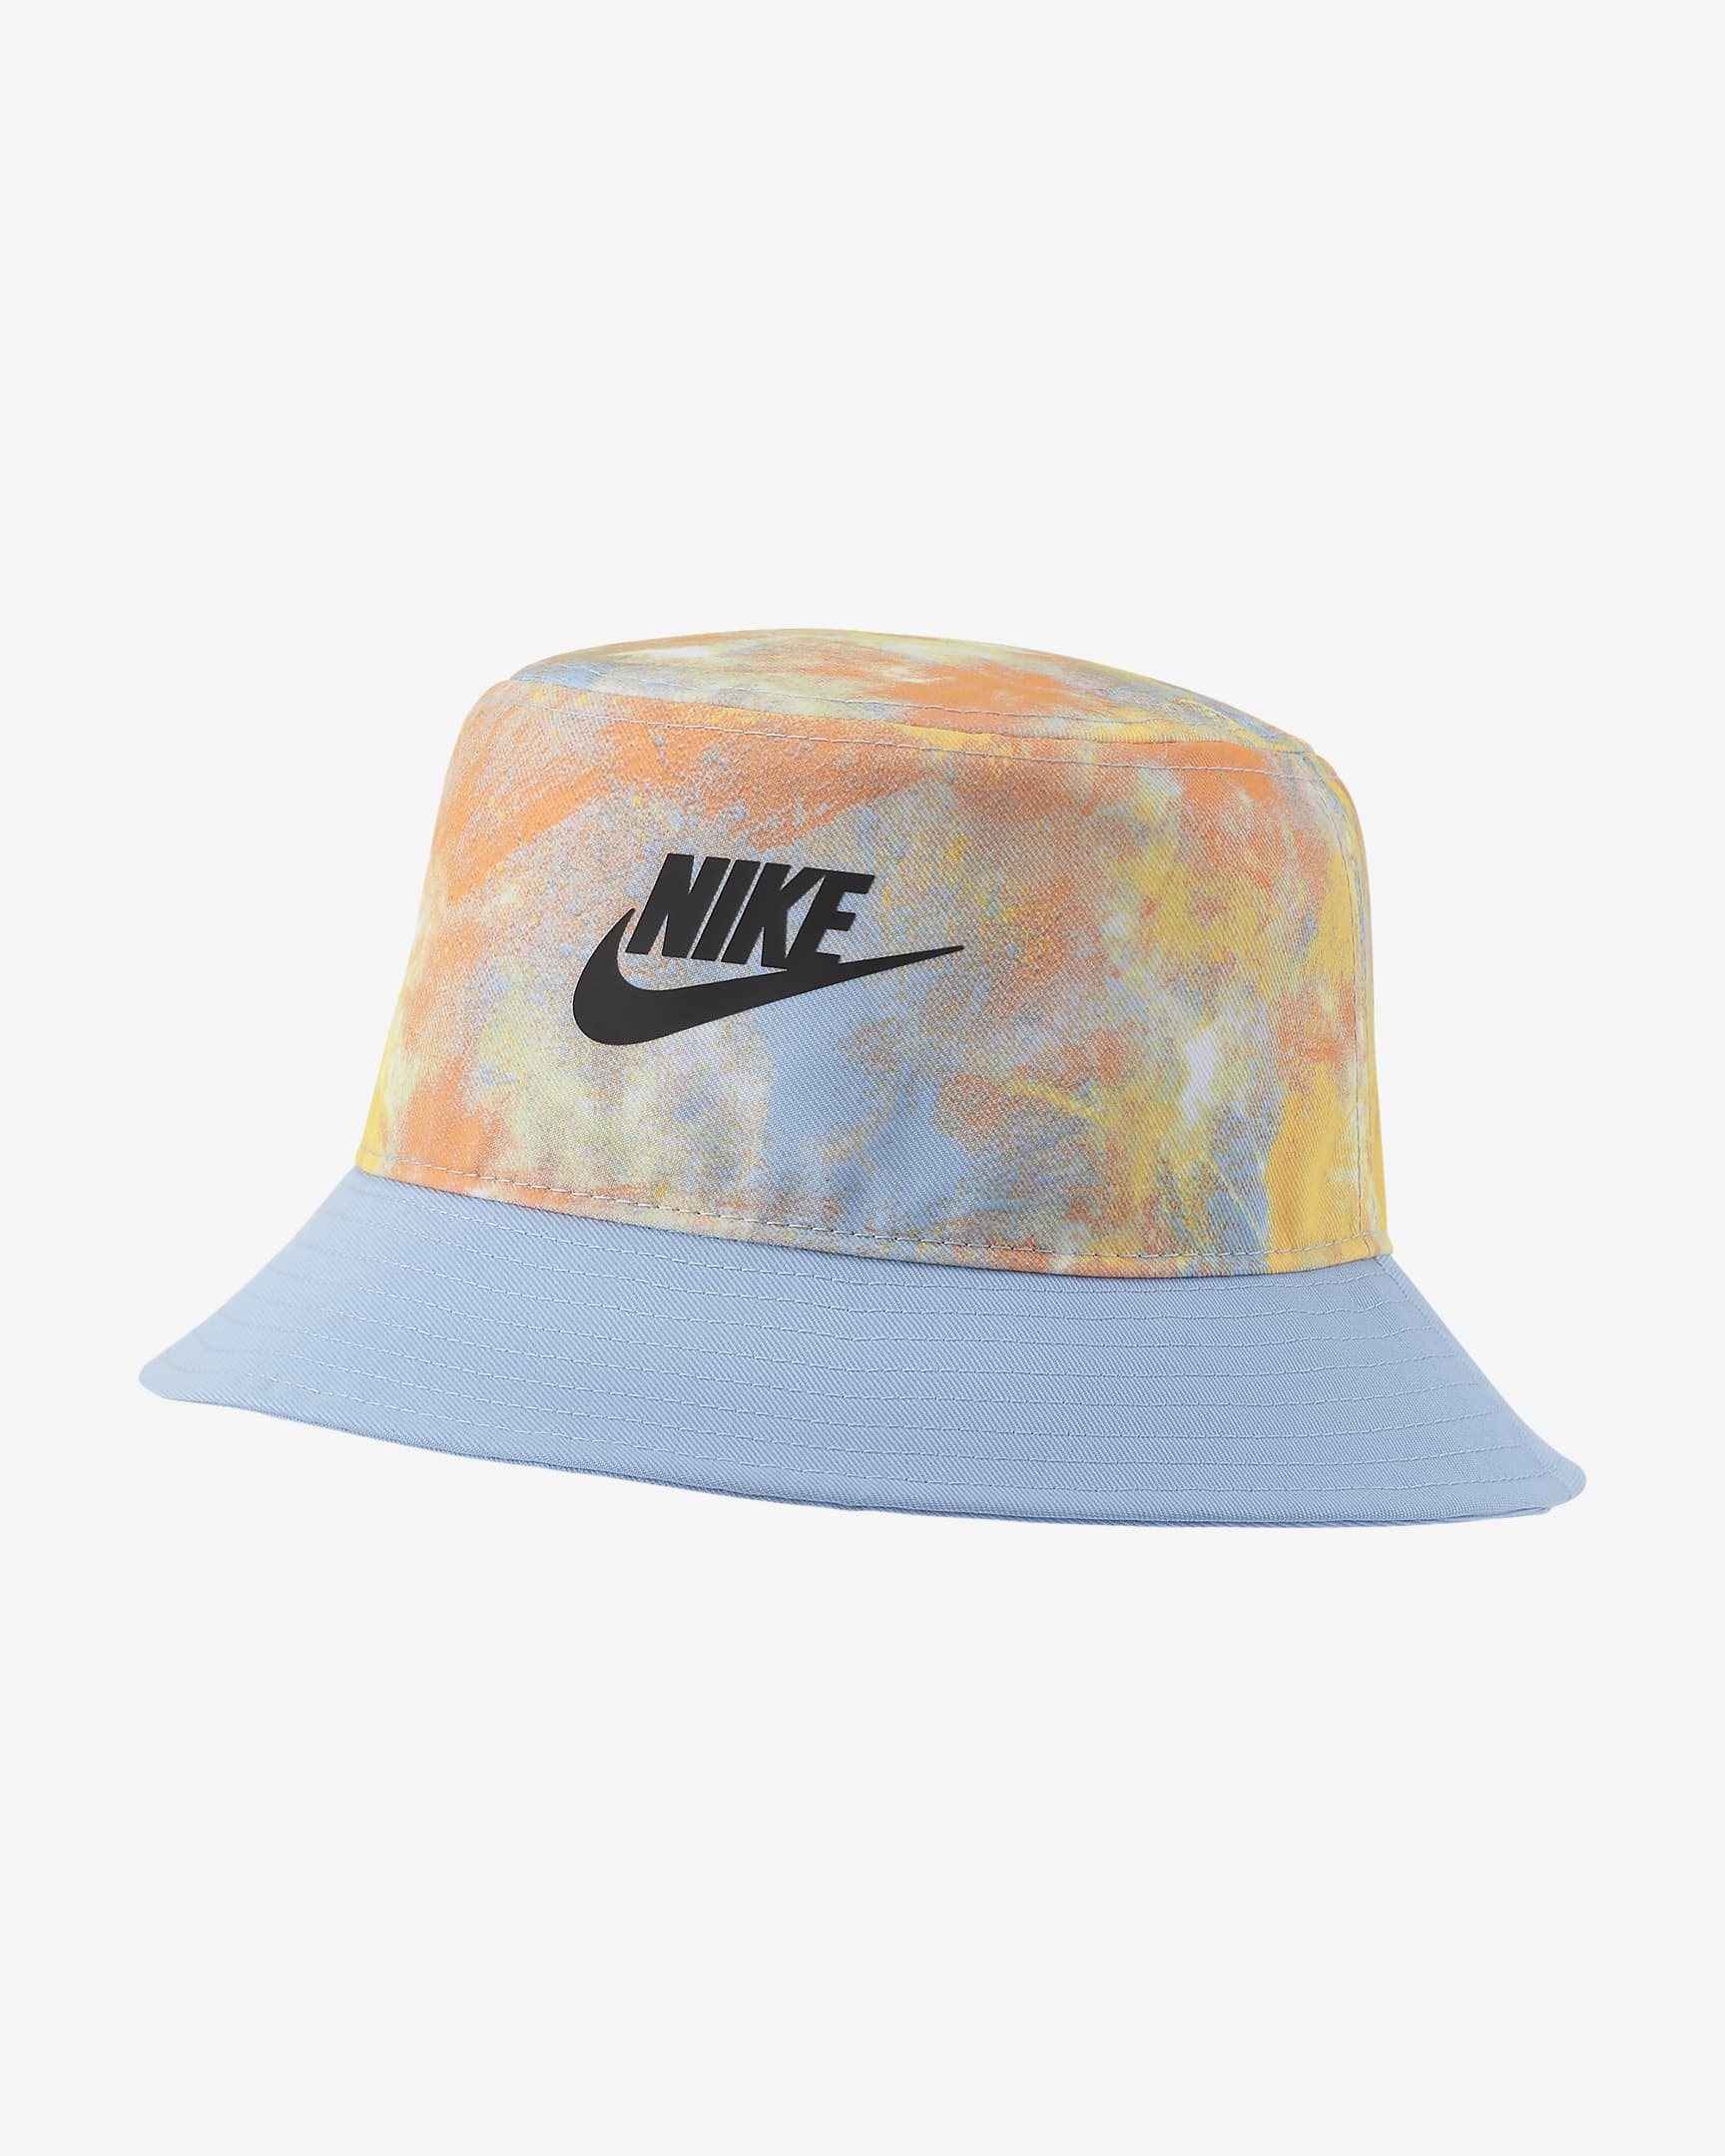 Nike Older Kids' Tie-Dye Bucket Hat. Nike VN